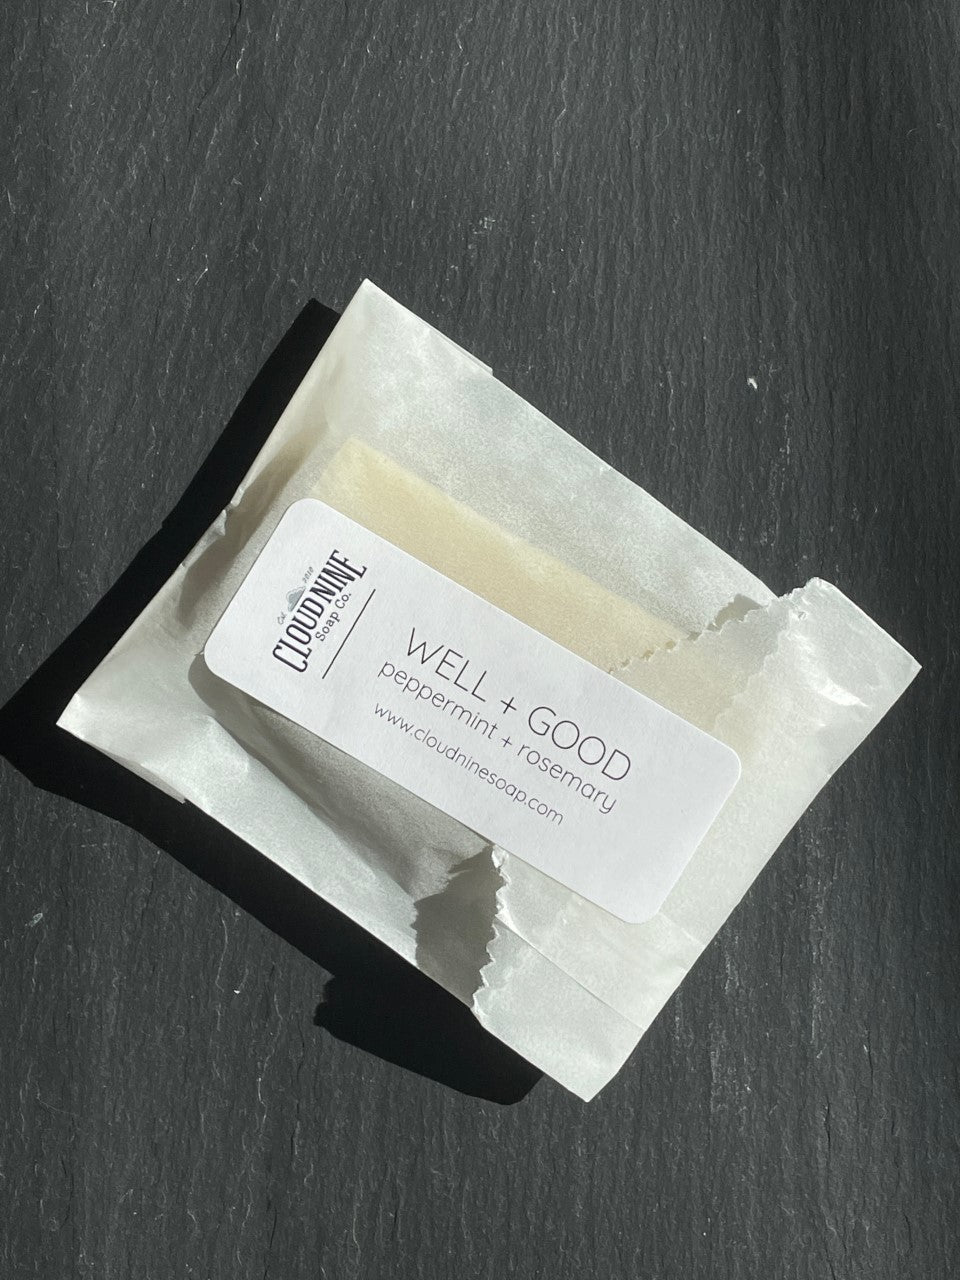 soap sample